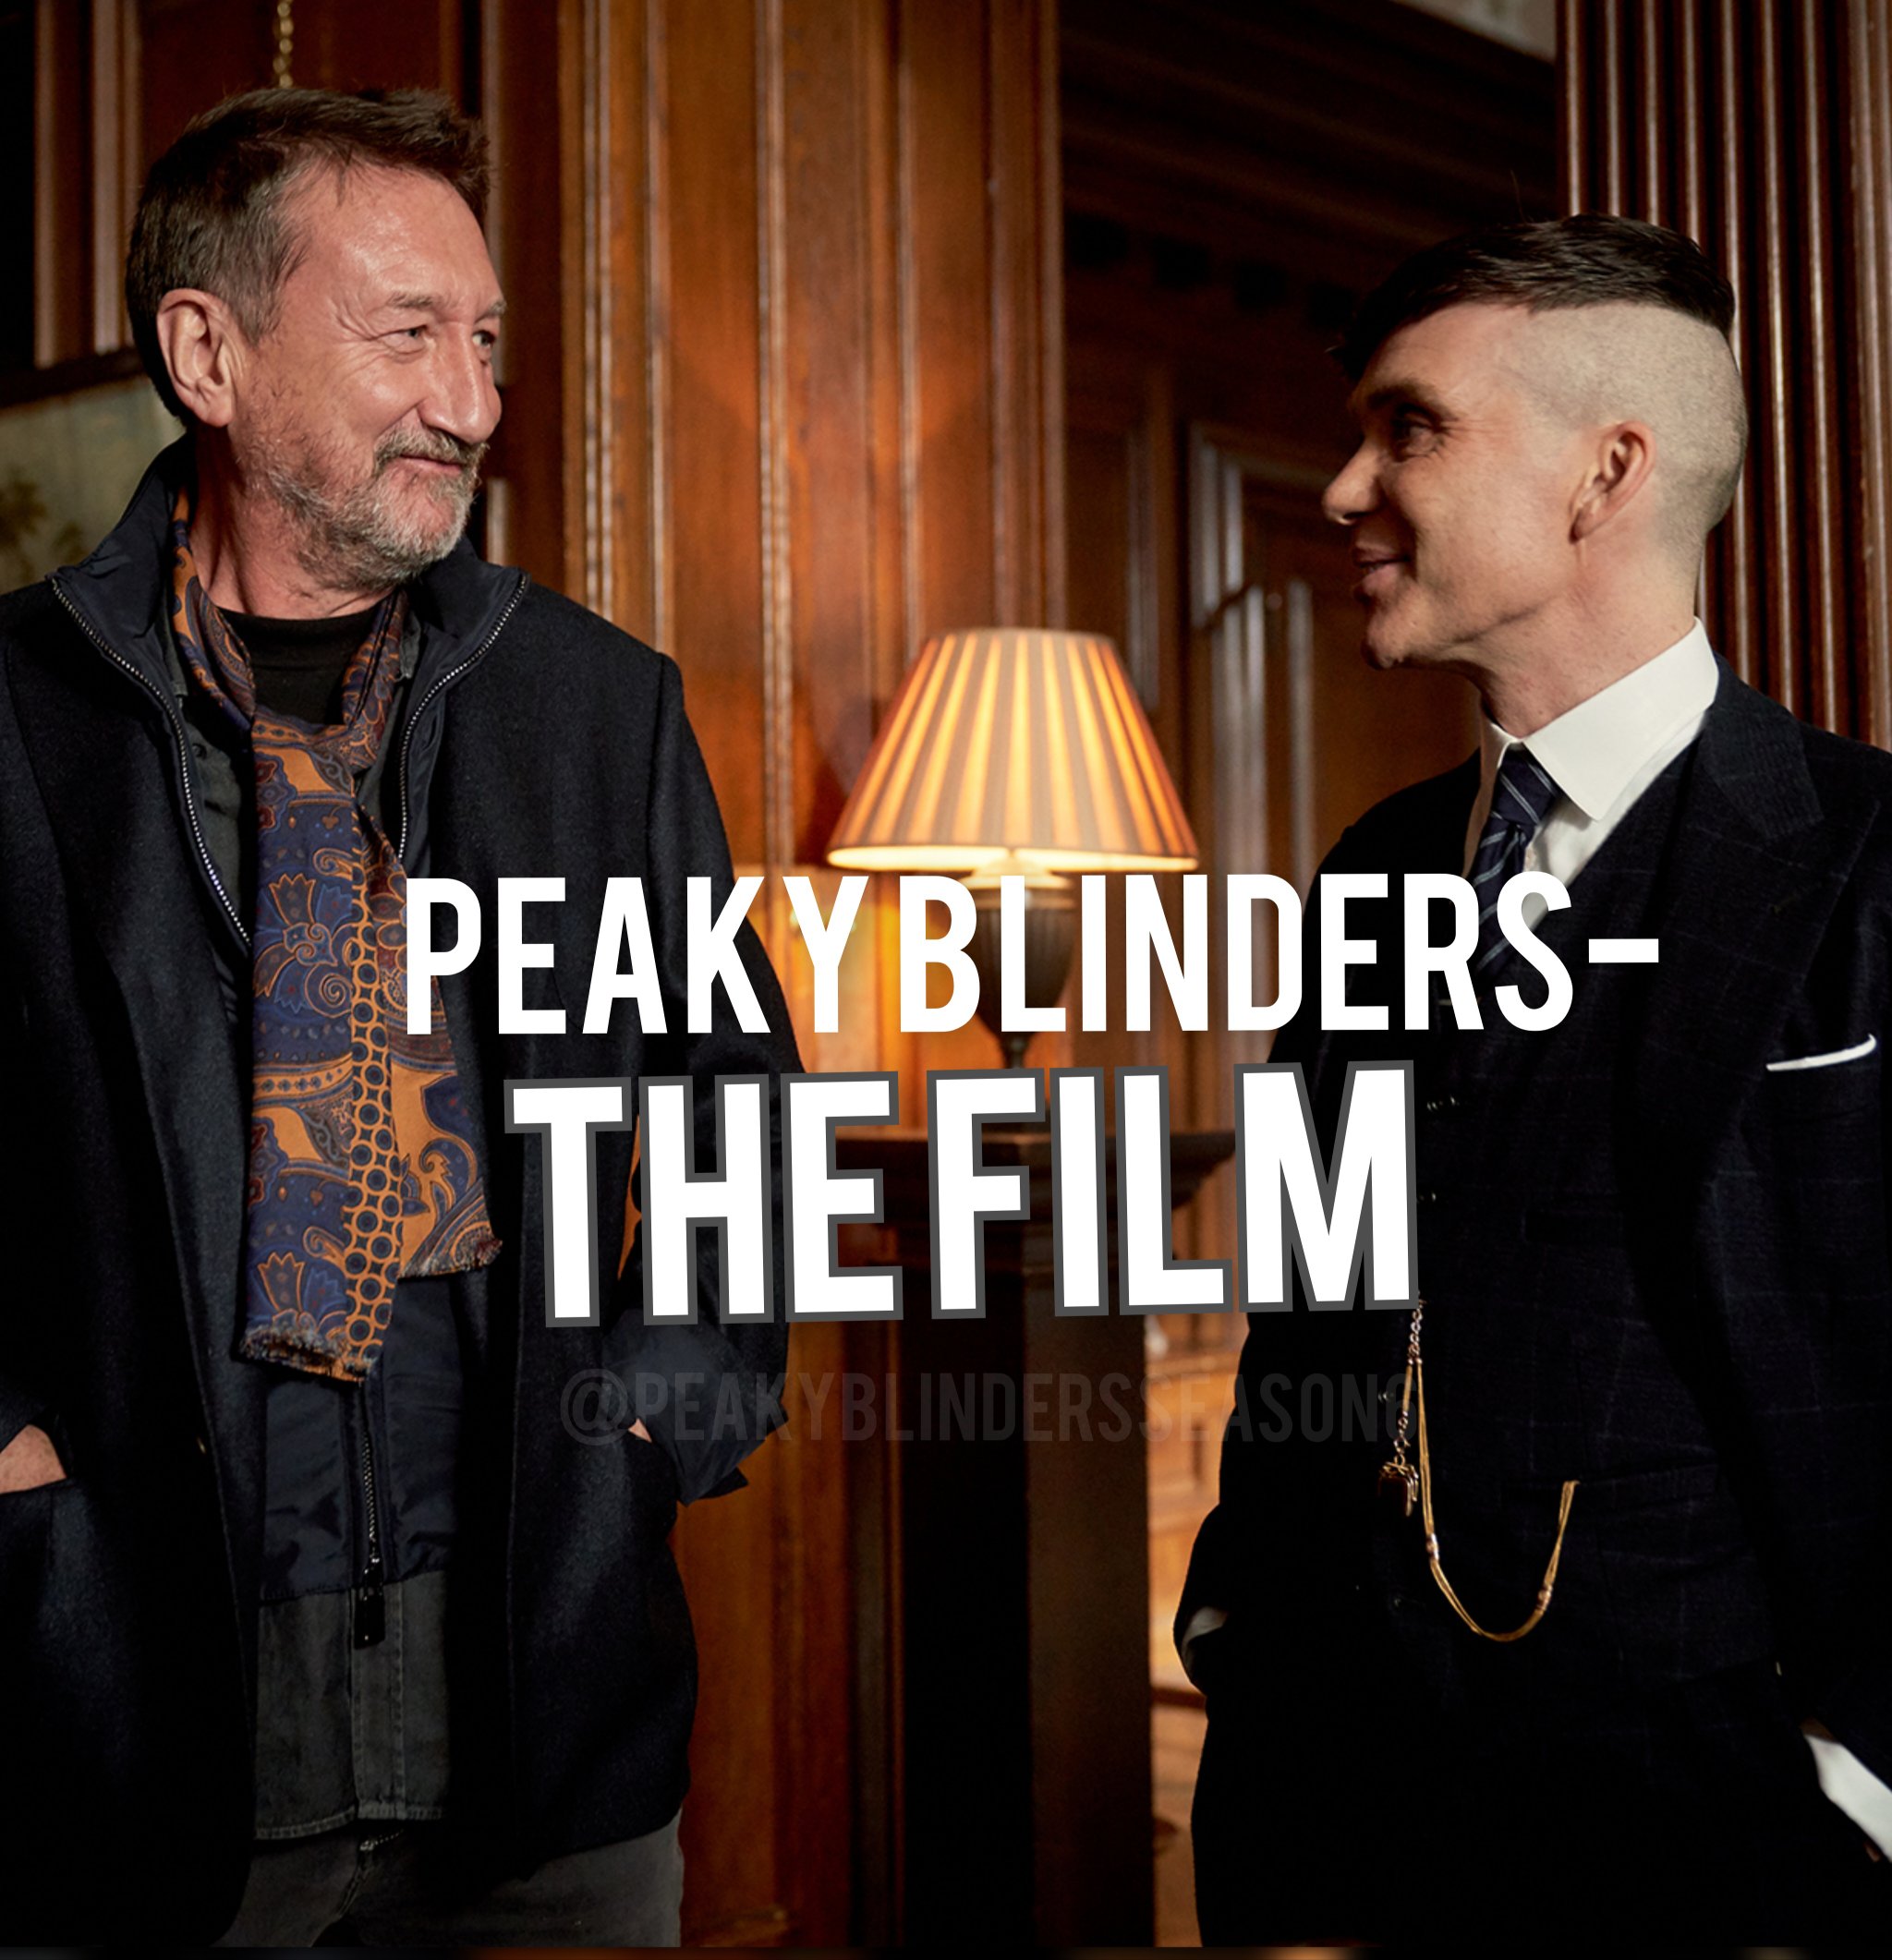 Peaky Blinders movie will begin filming in 2023, says series